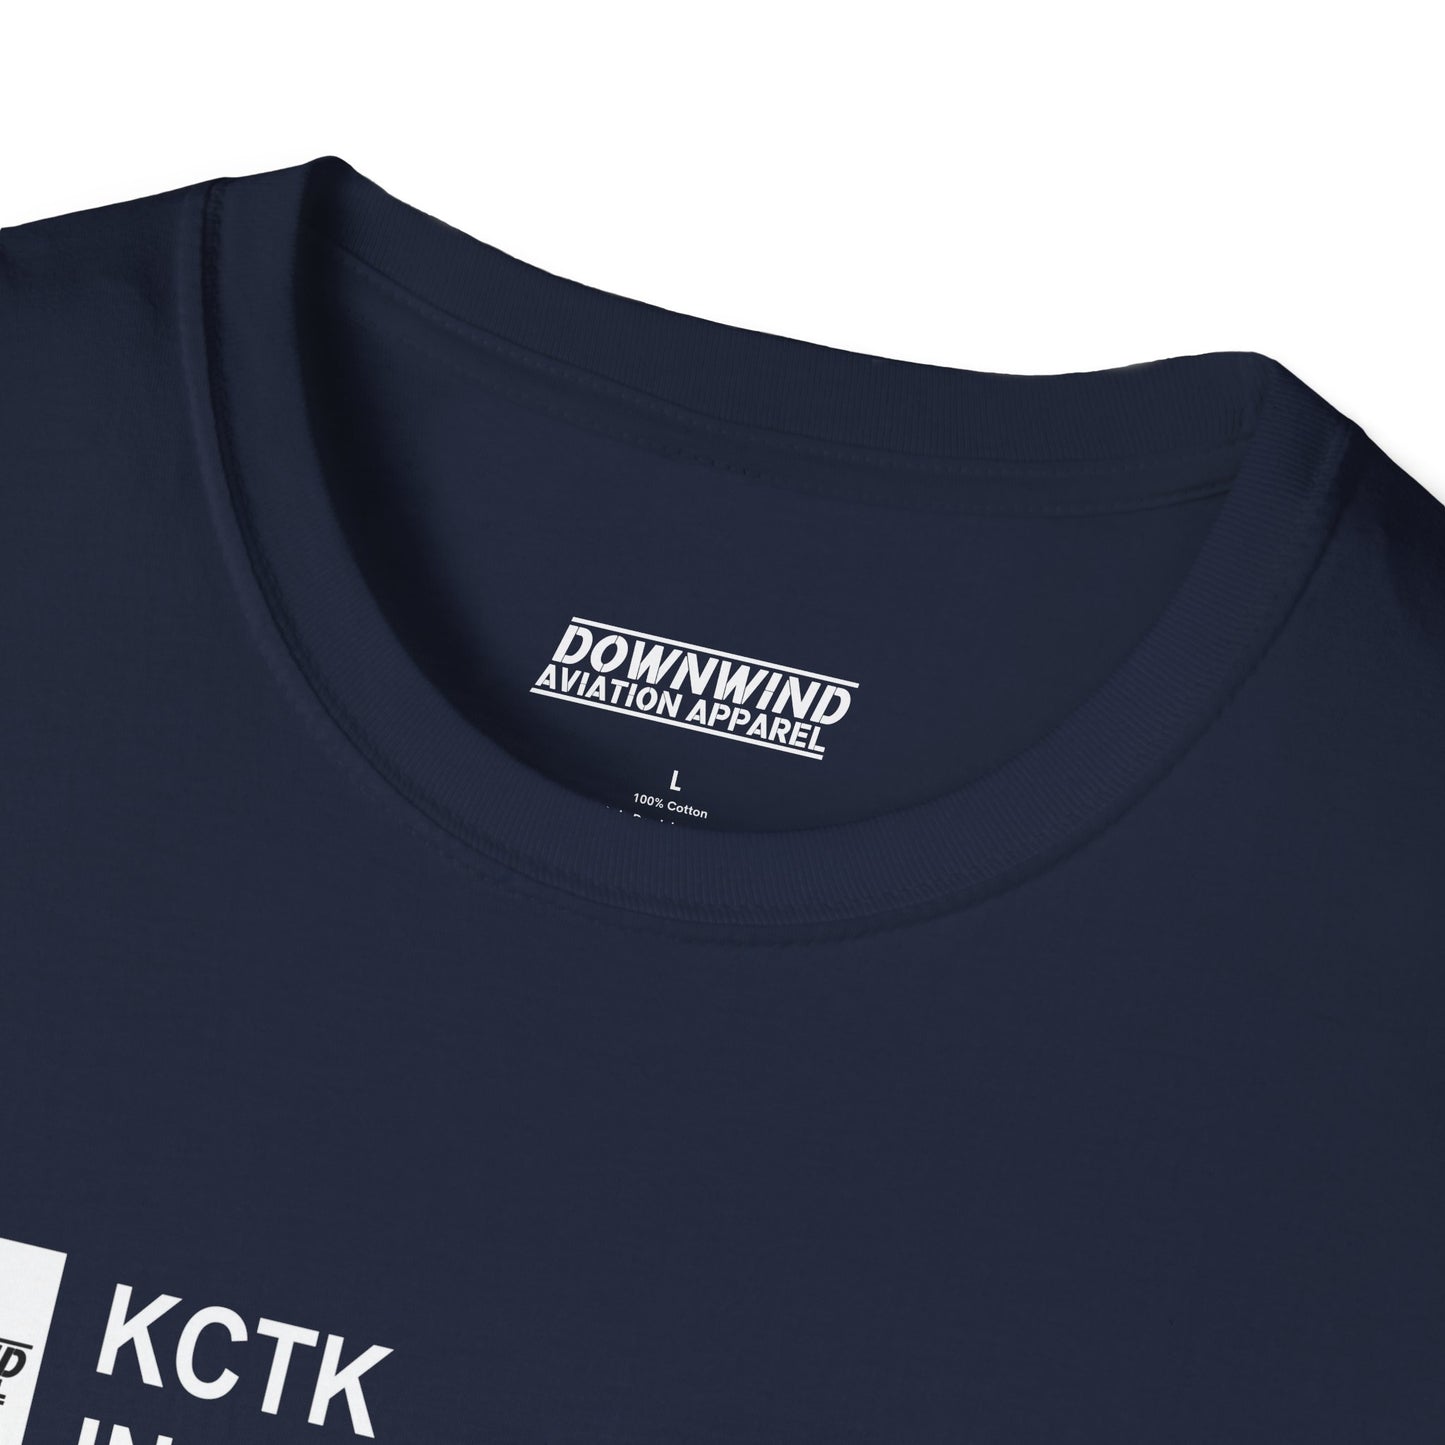 KCTK / Ingersoll Airport T-Shirt